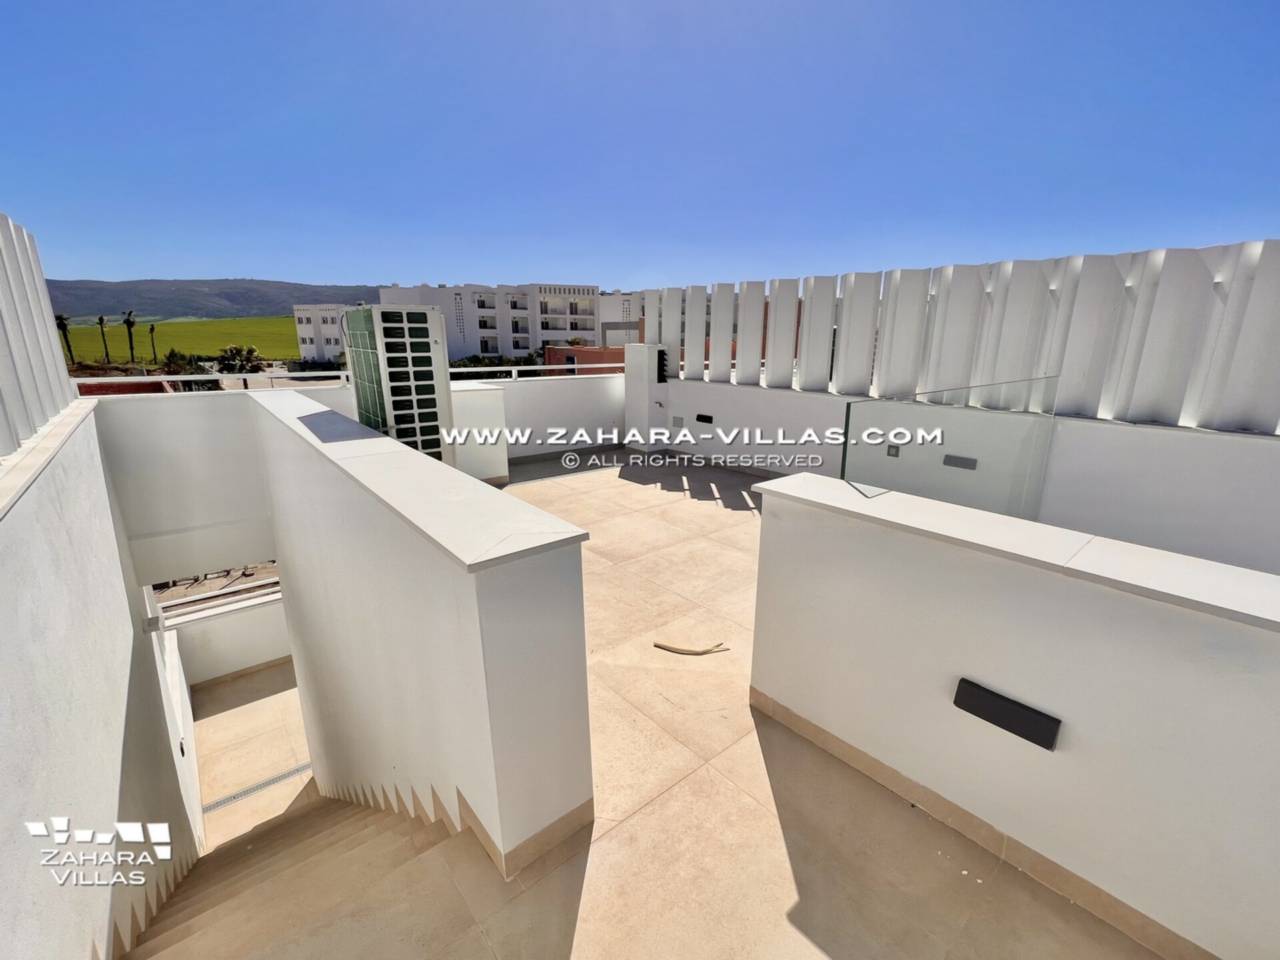 Imagen 41 de Promoción obra nueva terminada "EL OASIS DE ZAHARA" viviendas adosadas junto al mar